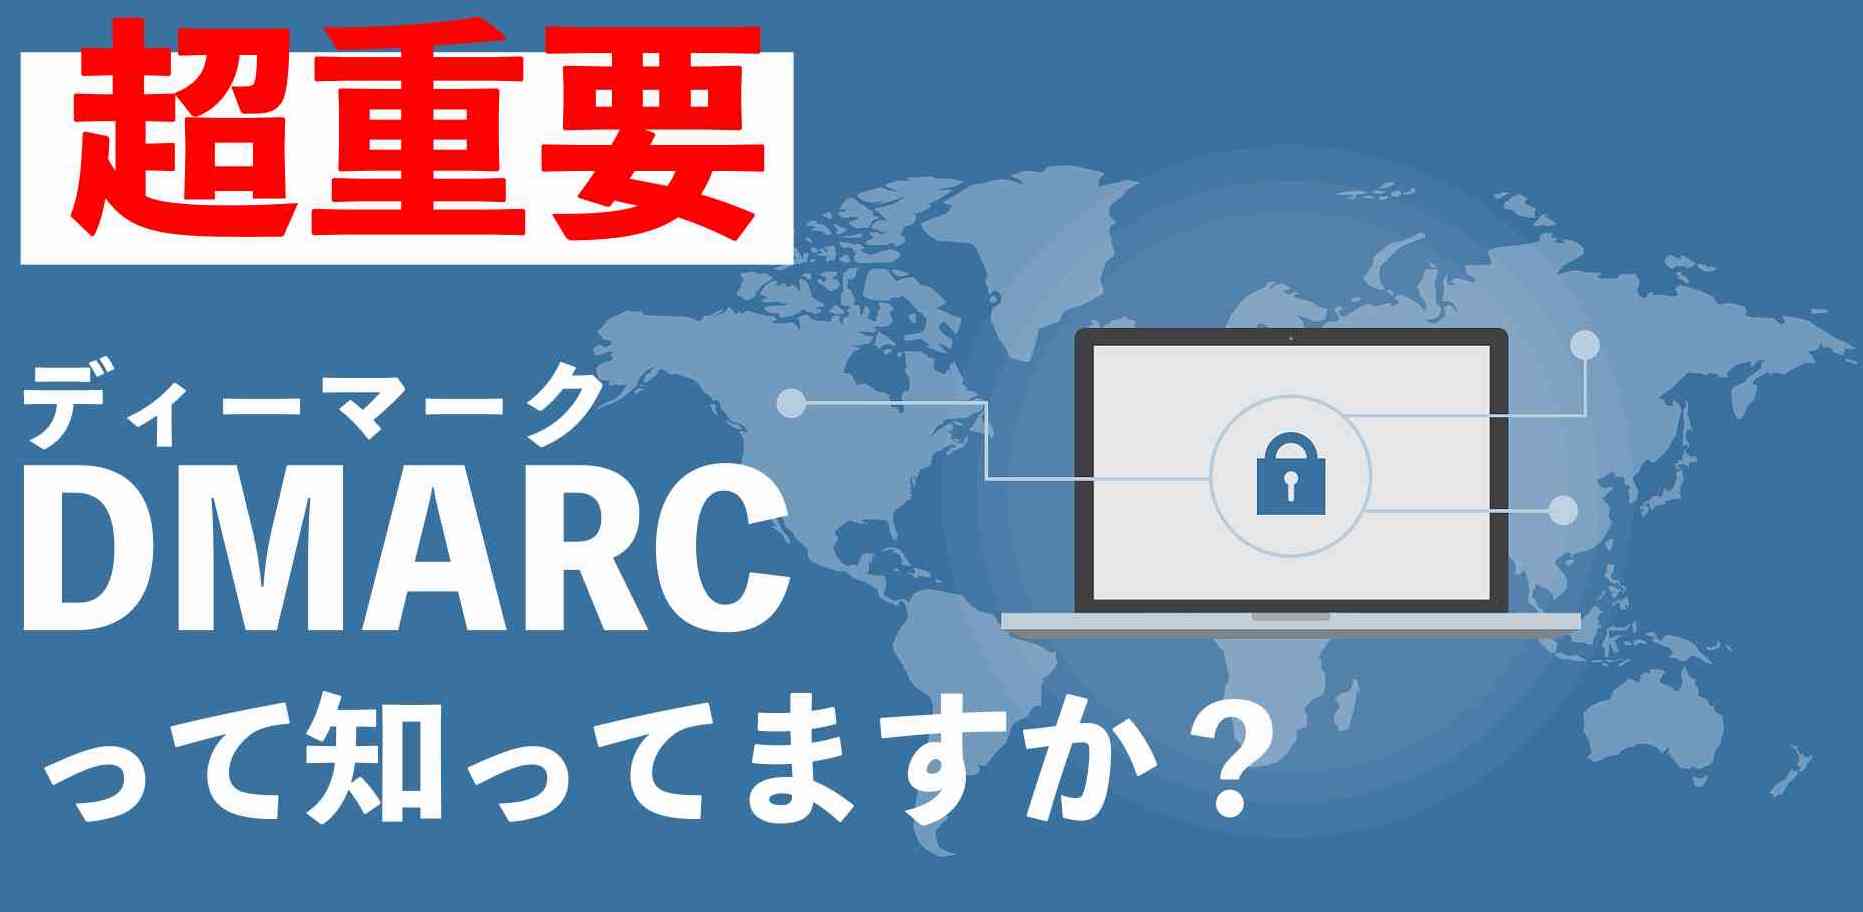 メールのセキュリティの鍵！ 「DMARC」に関する基礎知識